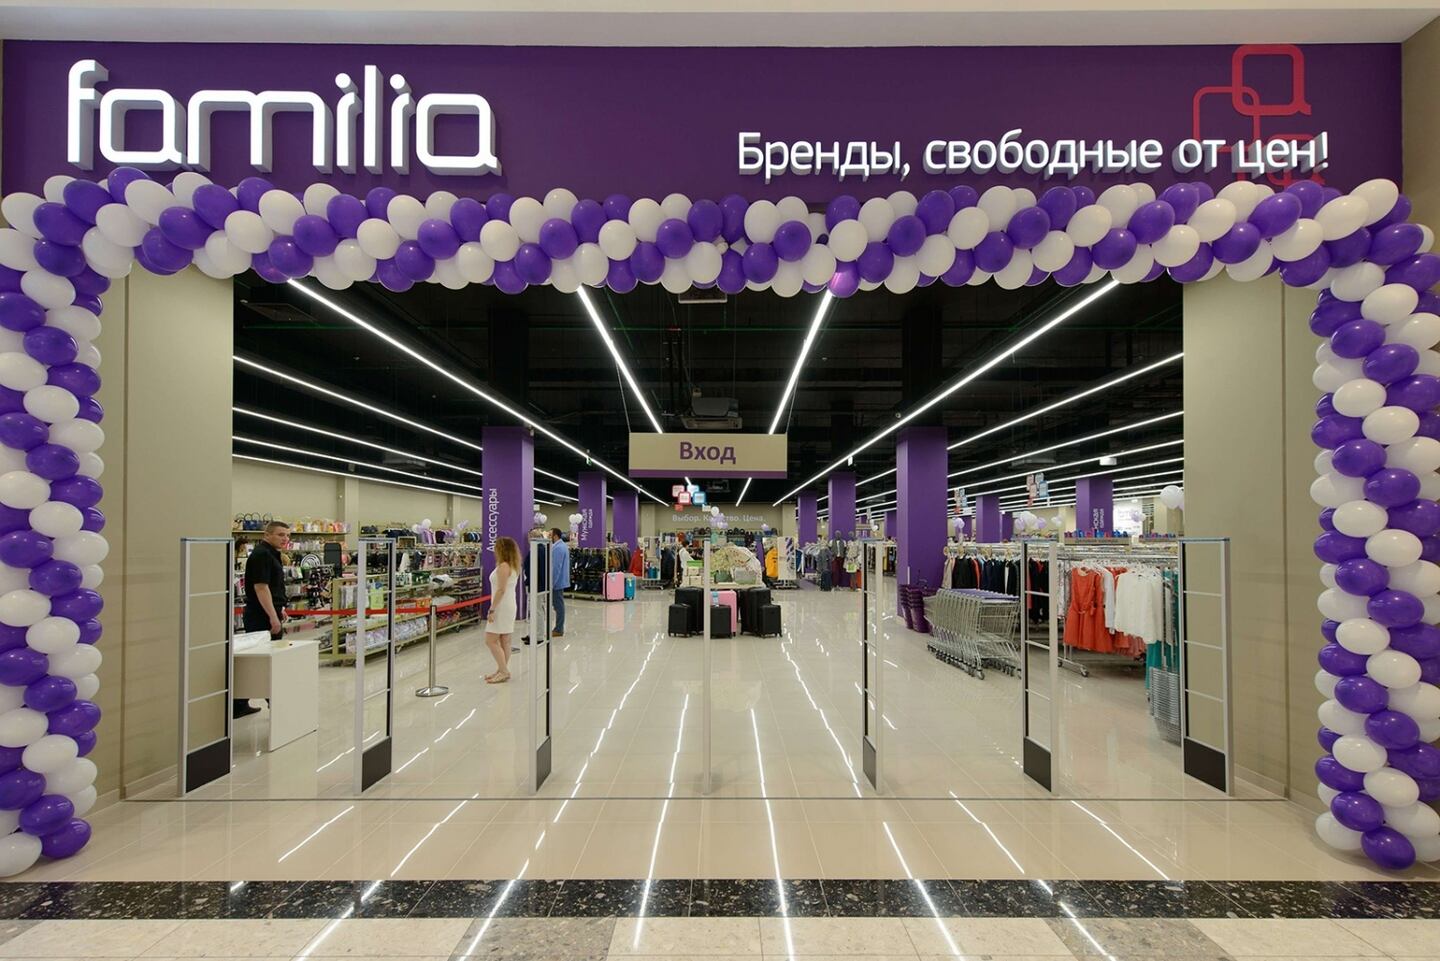 A Familia store in Russia. Familia.